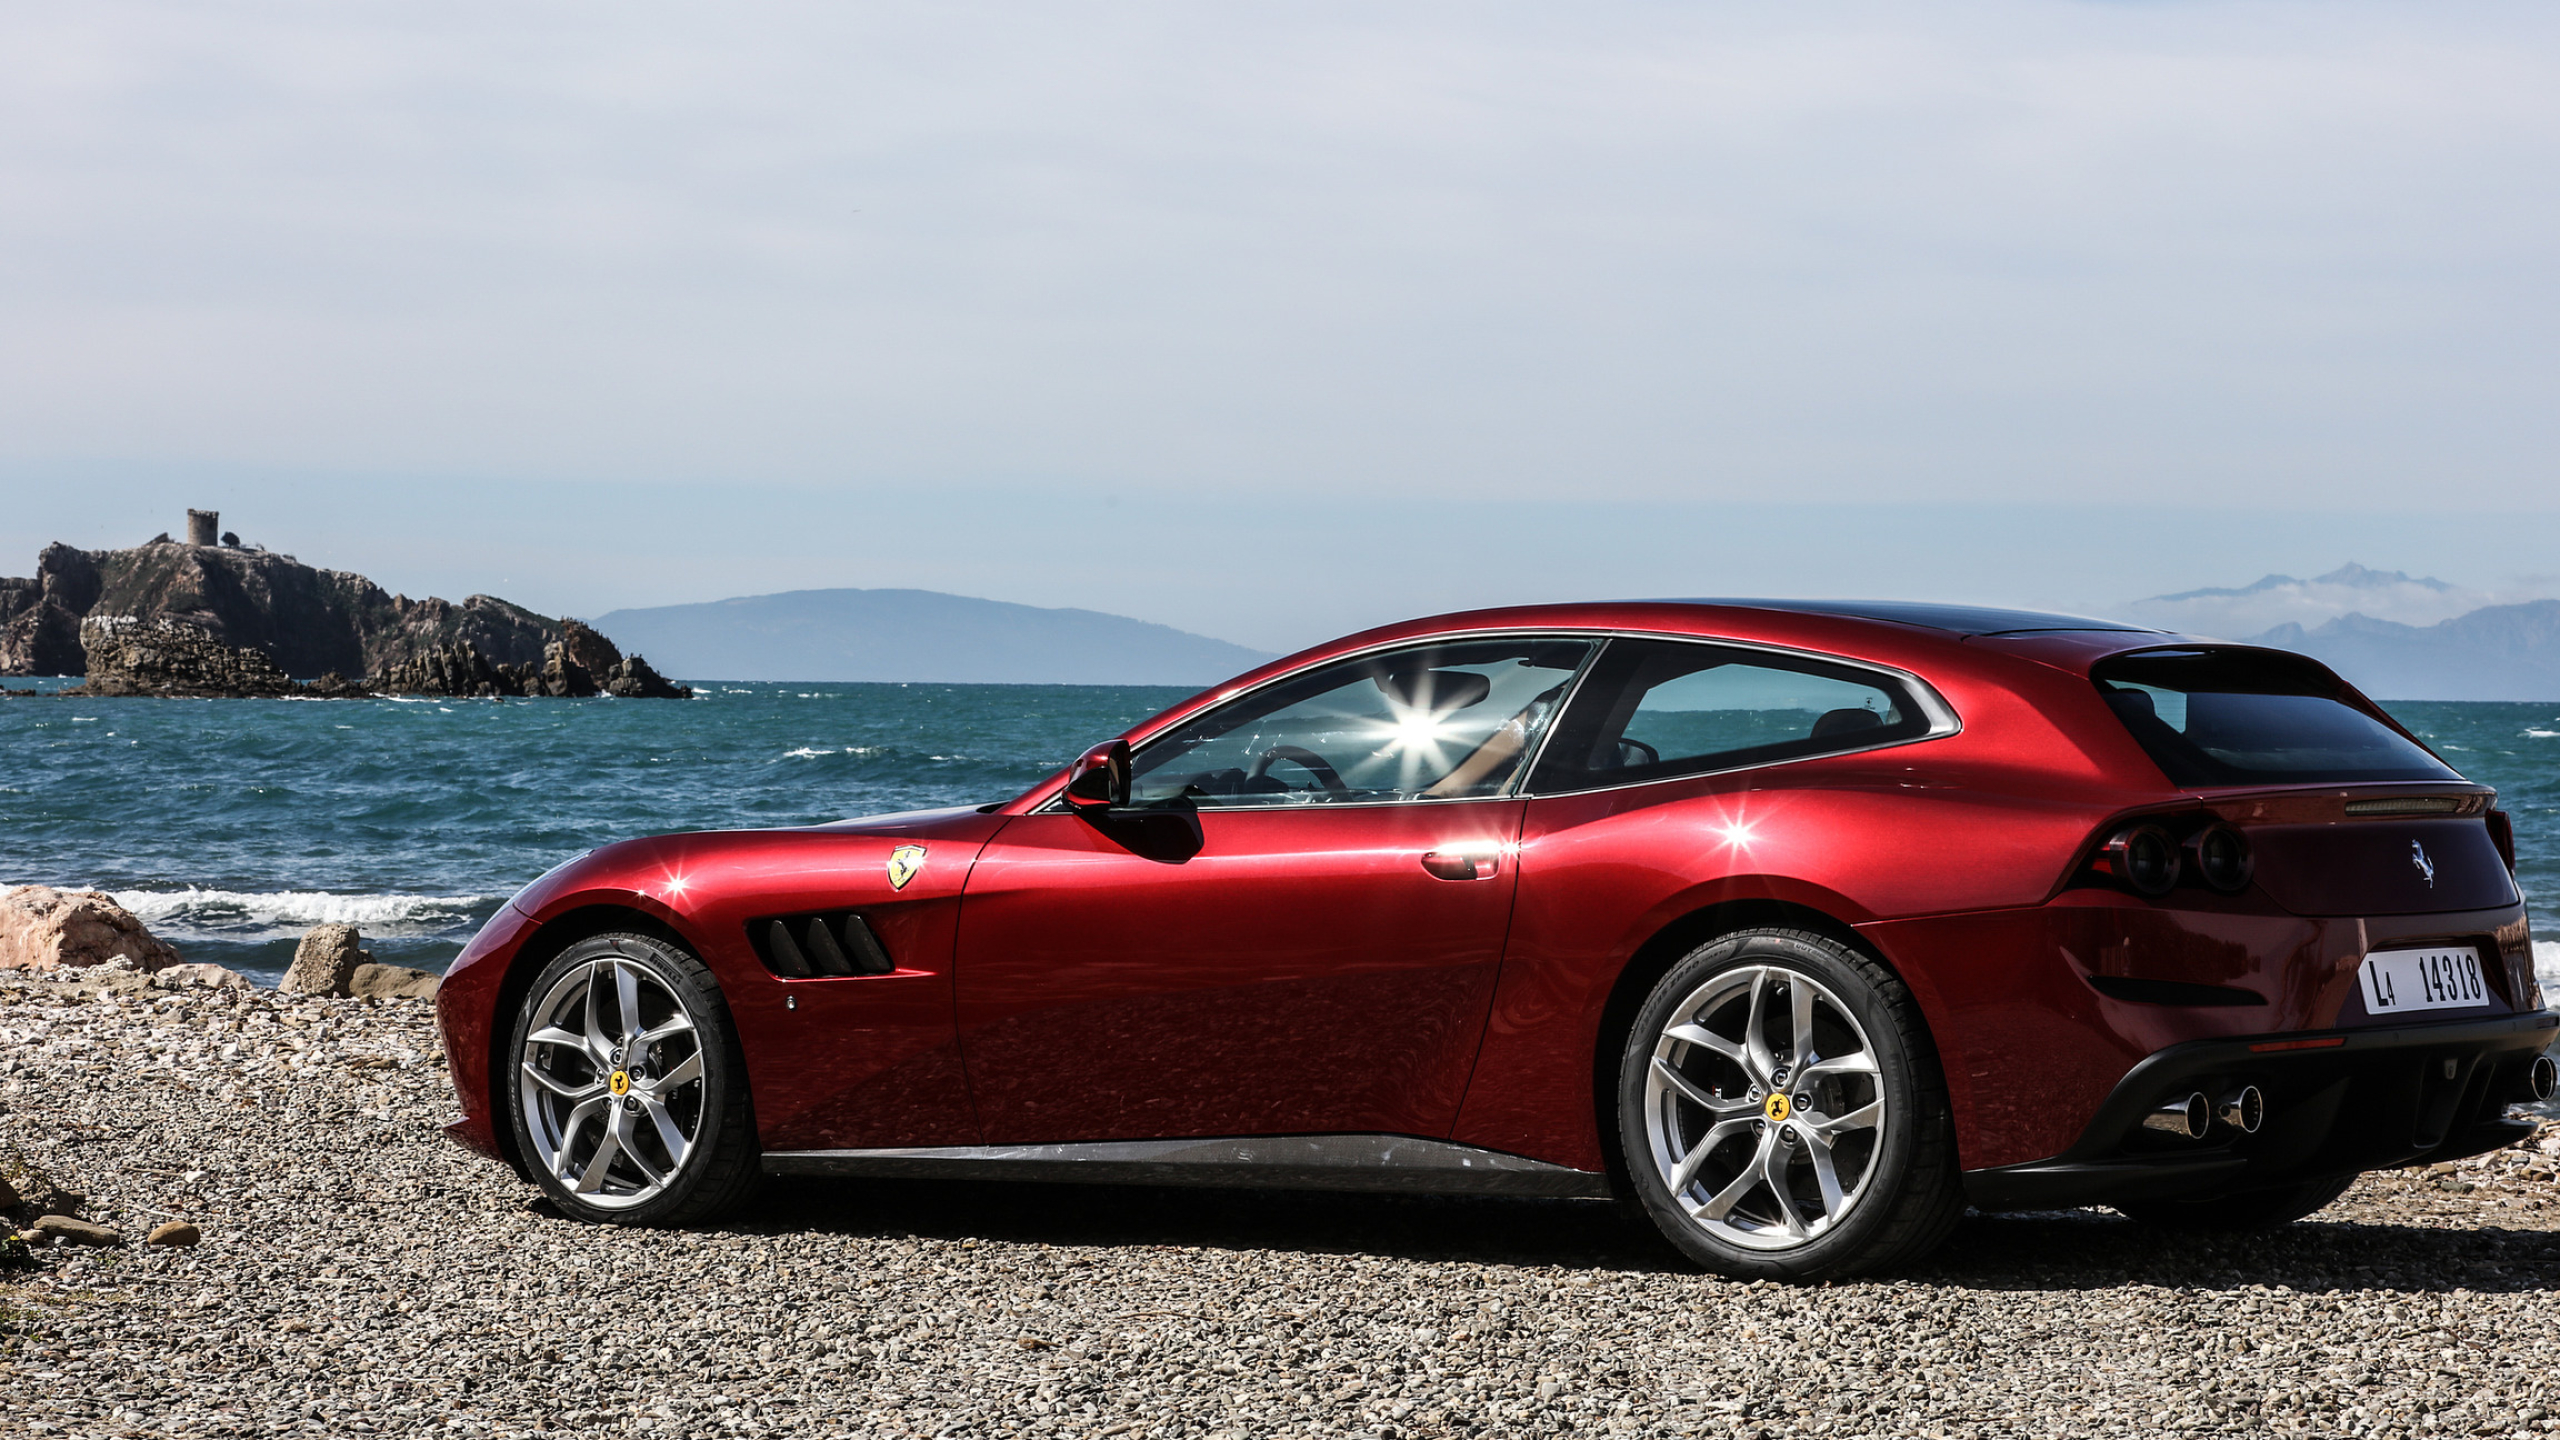 Ferrari GTC4 Lusso, Luxurious grand tourer, Fierce and powerful, Supercar magnificence, 2560x1440 HD Desktop